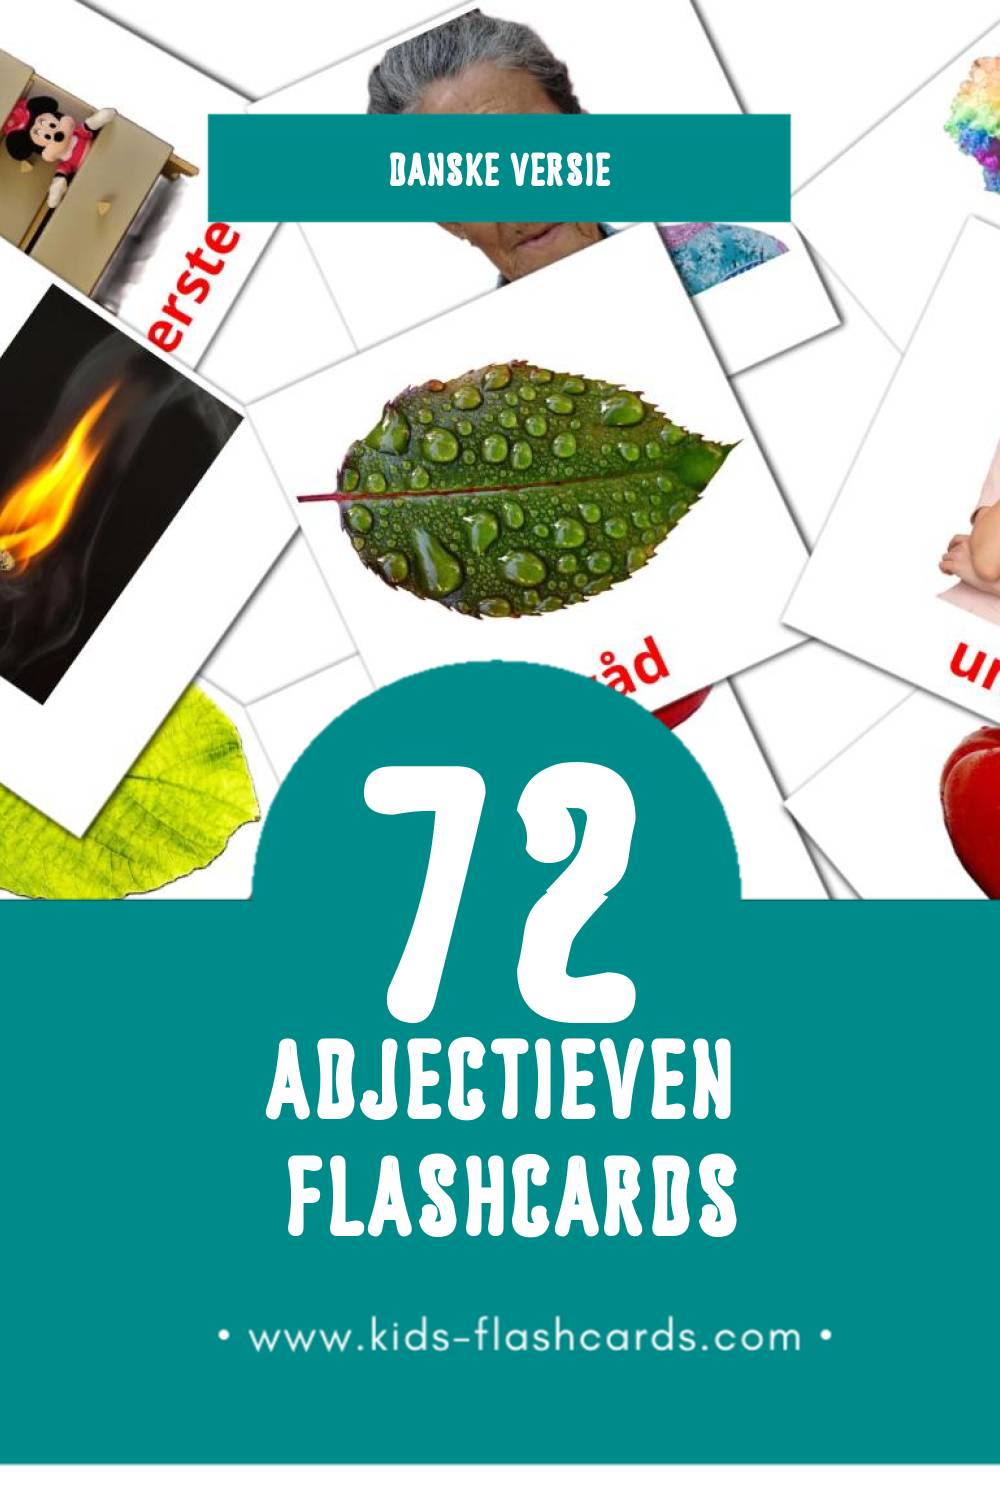 Visuele Adjektiv (Tillægsord) Flashcards voor Kleuters (72 kaarten in het Dansk)